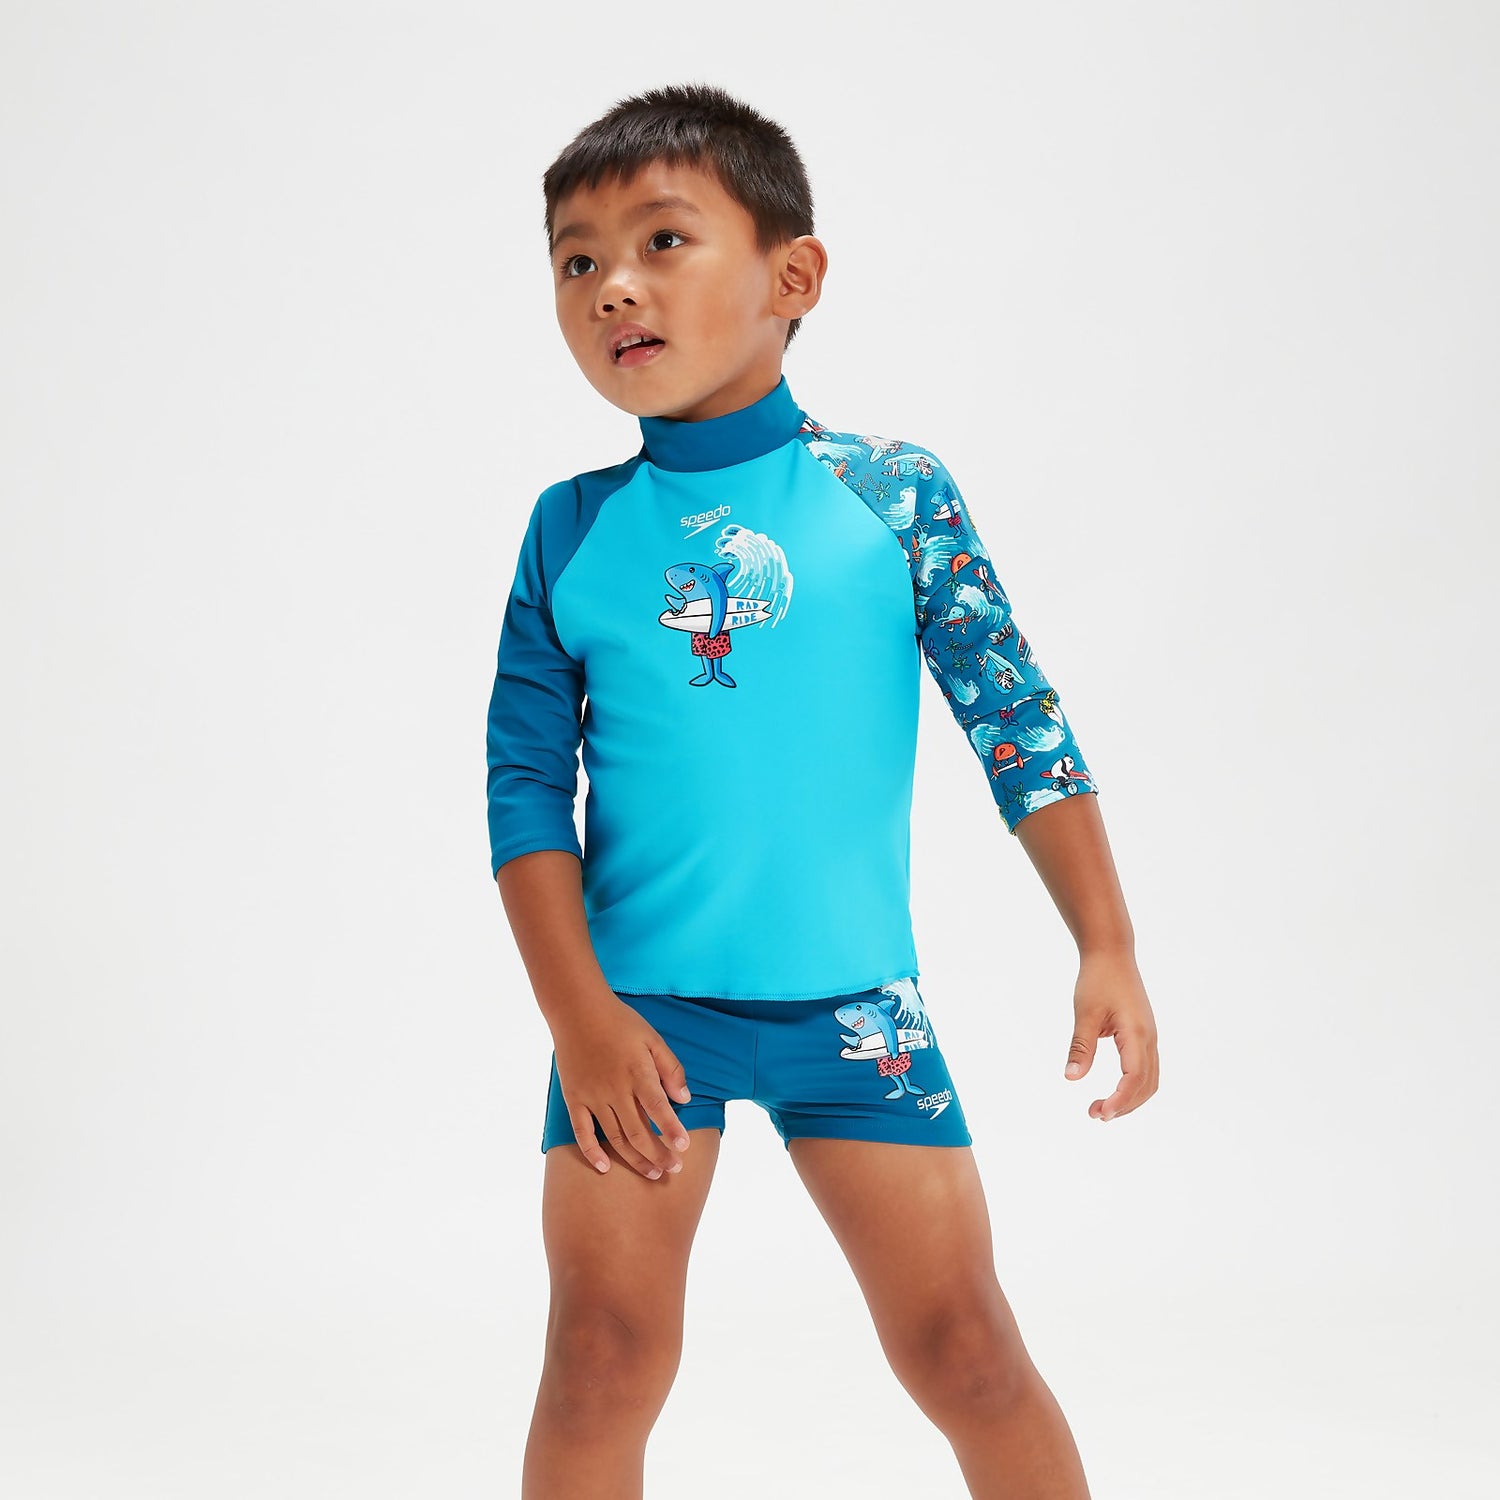 Conjunto de camiseta de neopreno y bañador entallado para niño